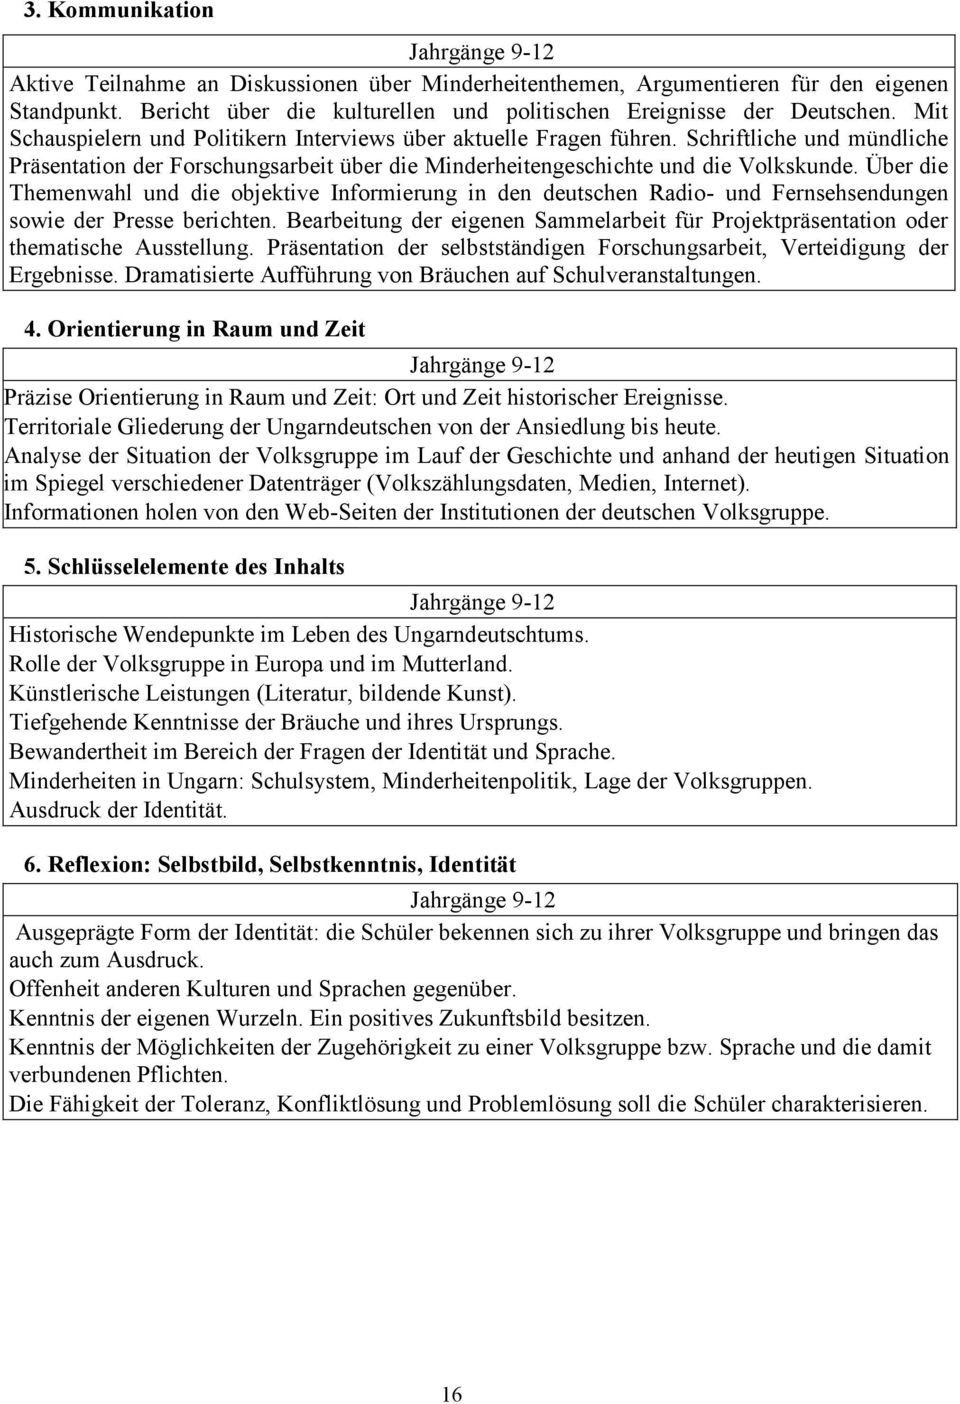 Schriftliche und mündliche Präsentation der Forschungsarbeit über die Minderheitengeschichte und die Volkskunde.